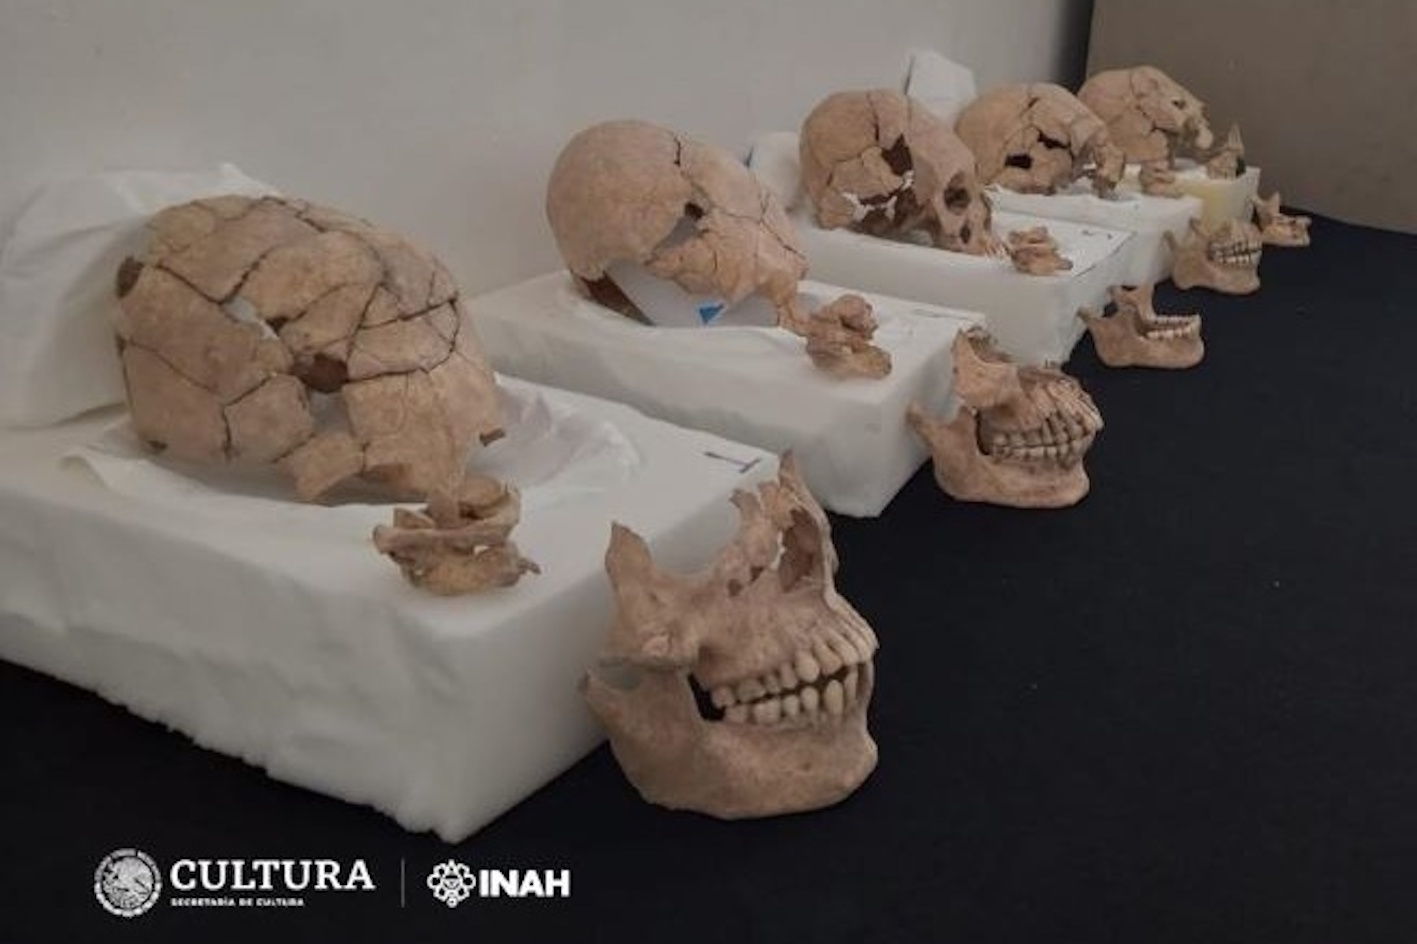 Des crânes découverts sur un ancien site maya révèlent un rituel historique horrible